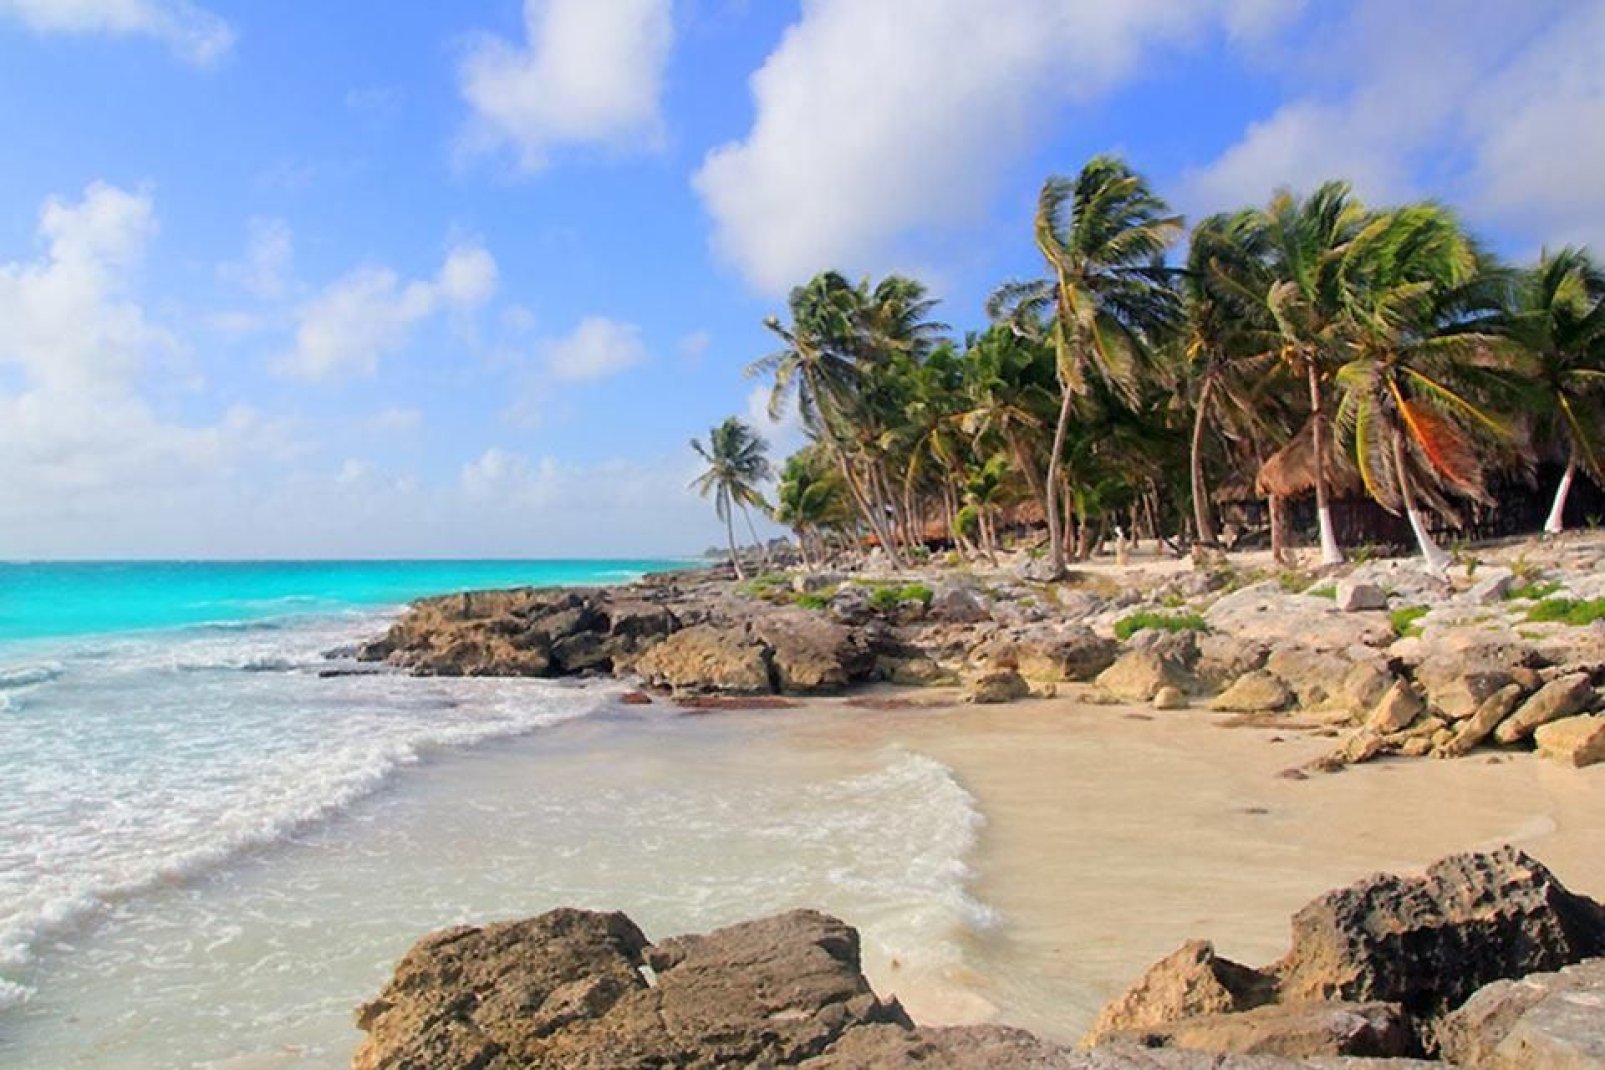 Il fascino di questa cittadina è anche dato dalla sabbia bianca e finissima tipica delle isole caraibiche.